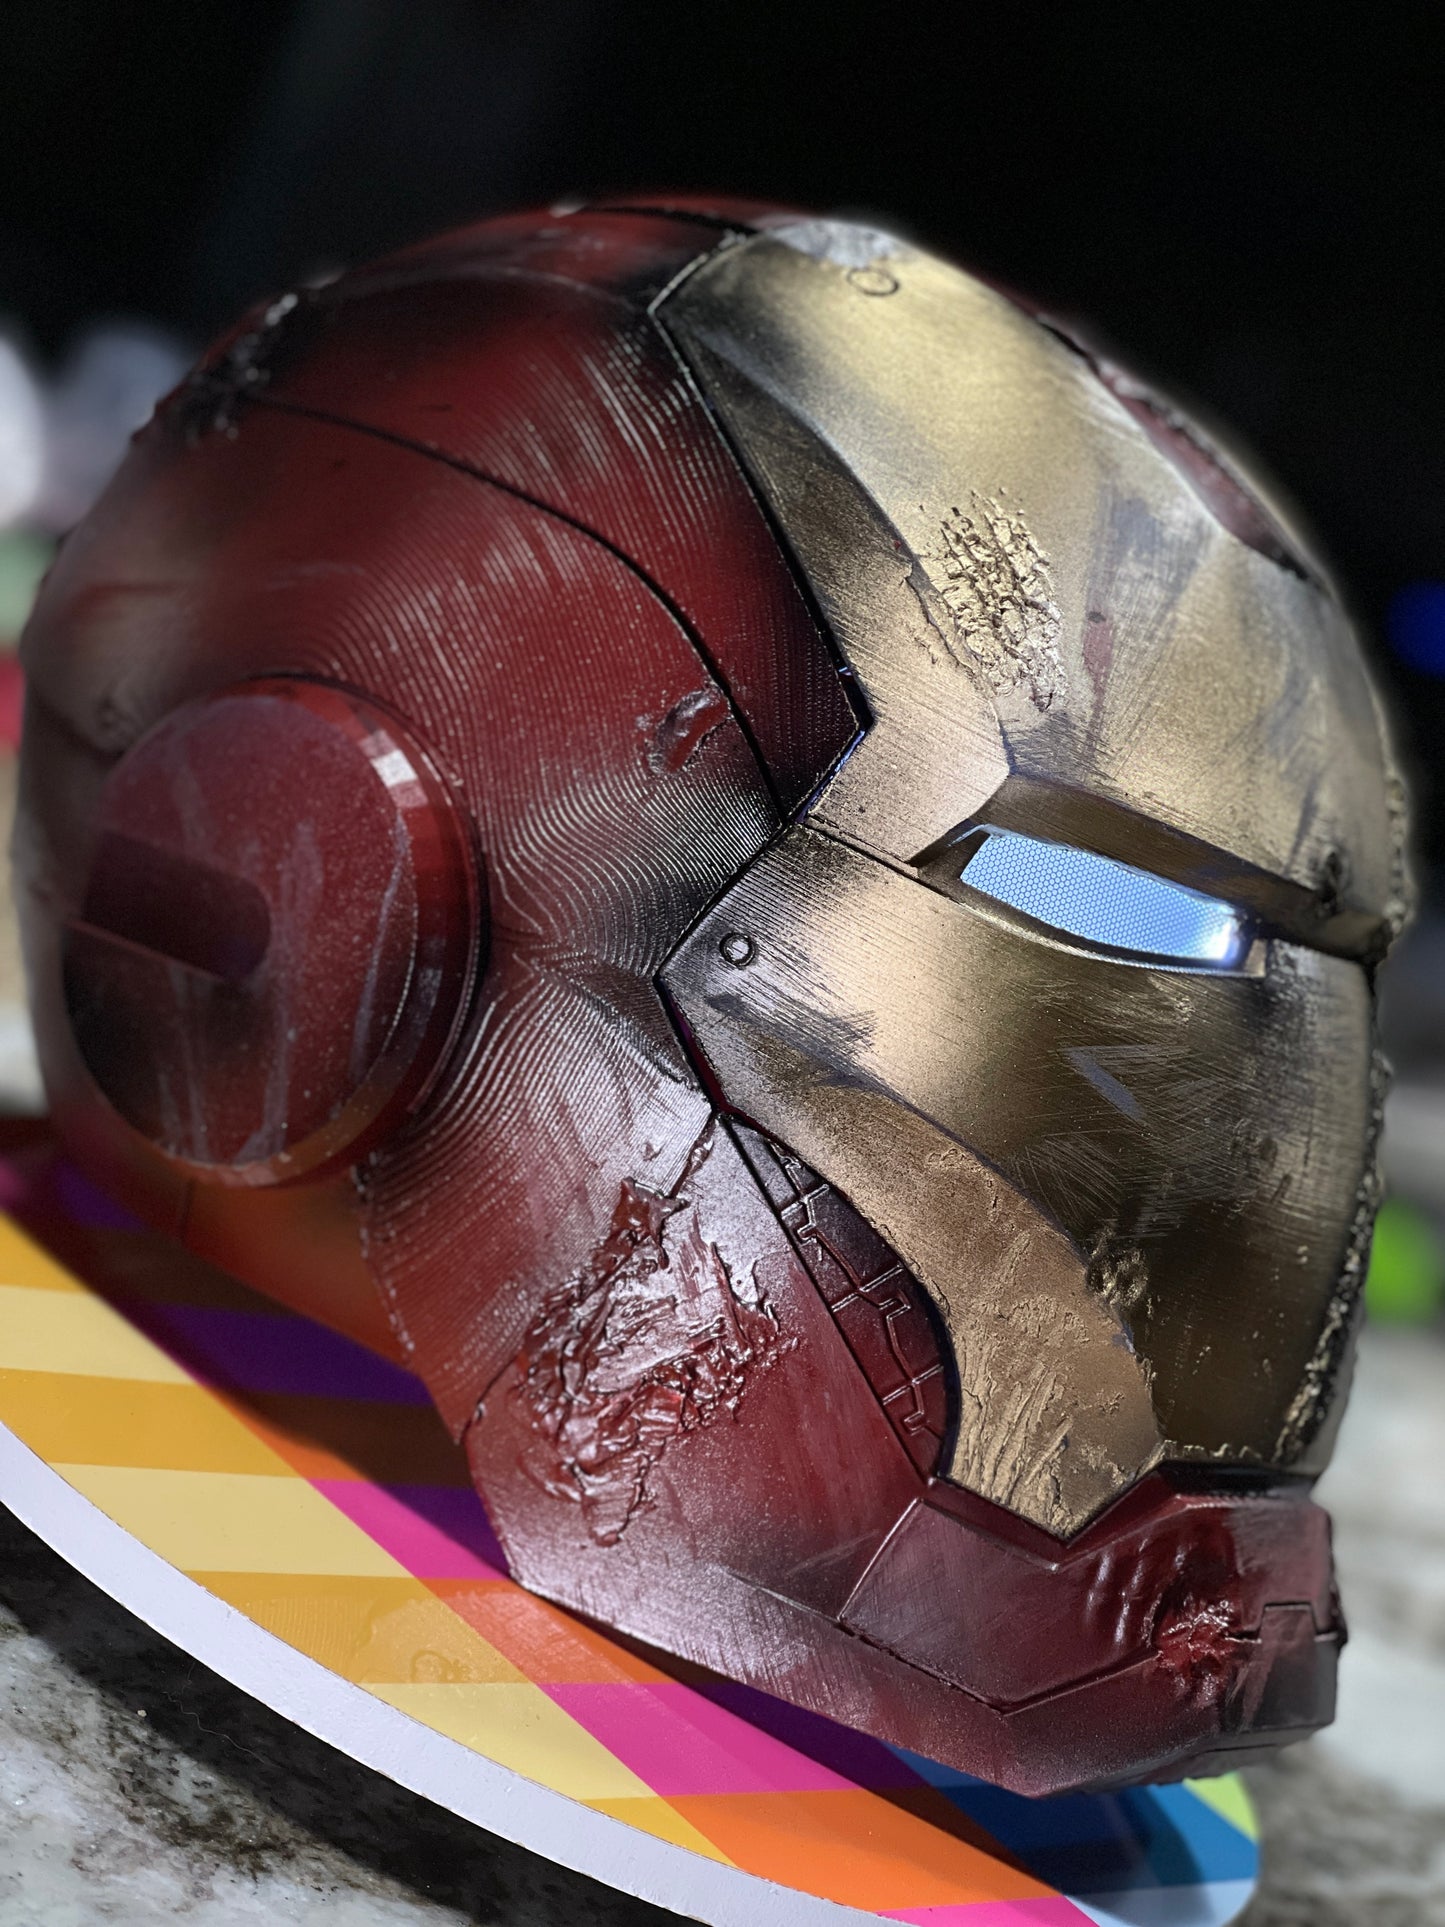 Custom Iron man Helmet Mkiii - prop - 3D Props Play